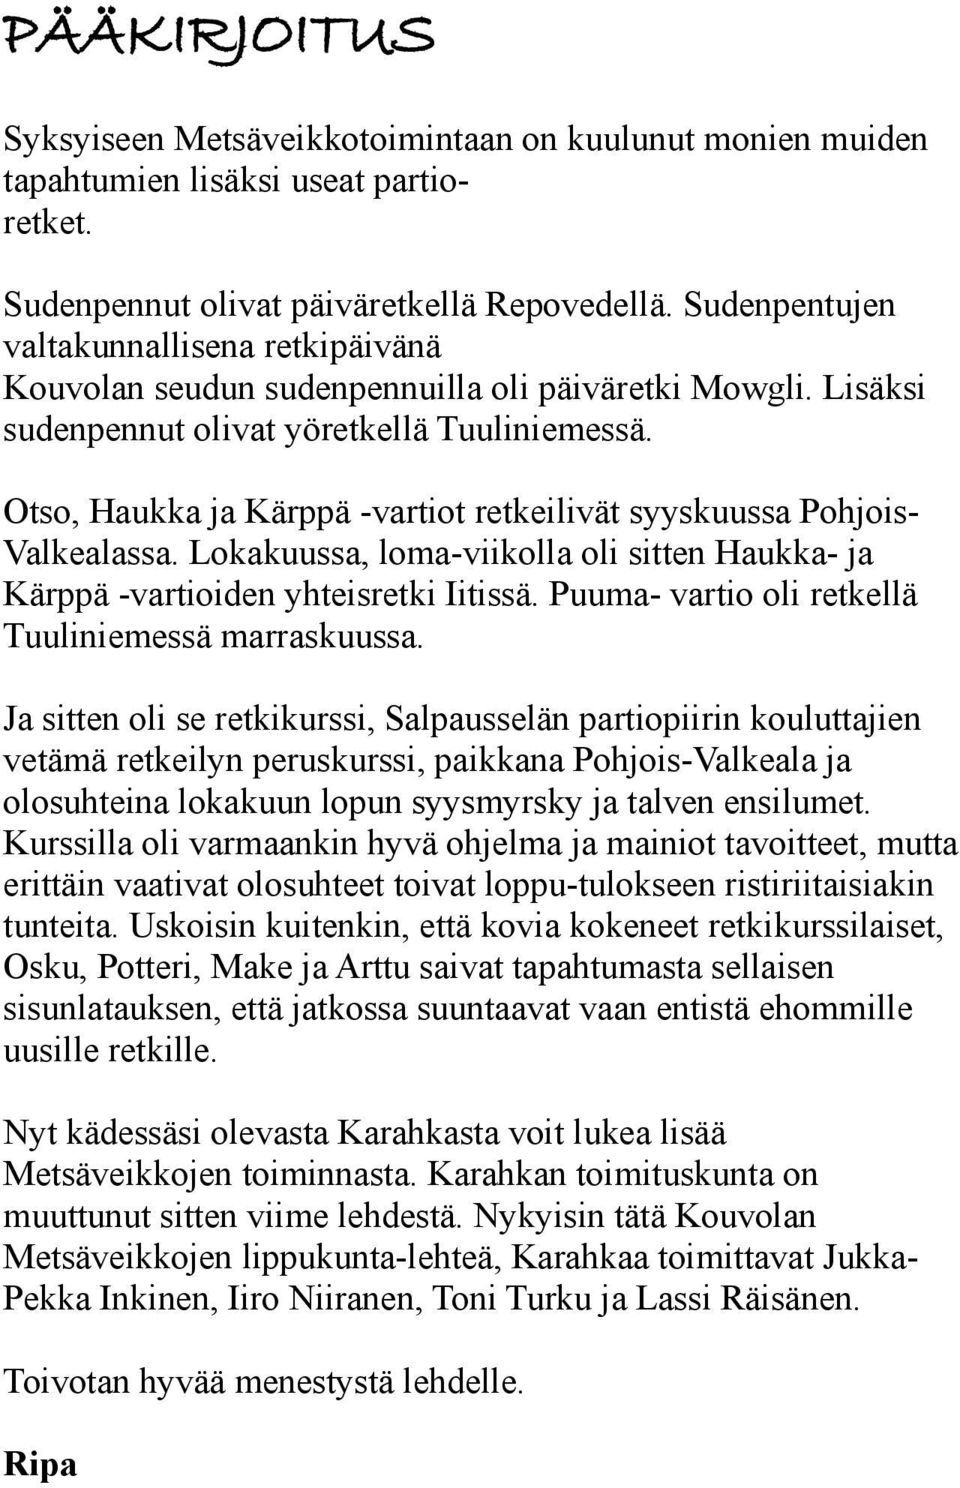 Otso, Haukka ja Kärppä -vartiot retkeilivät syyskuussa PohjoisValkealassa. Lokakuussa, loma-viikolla oli sitten Haukka- ja Kärppä -vartioiden yhteisretki Iitissä.